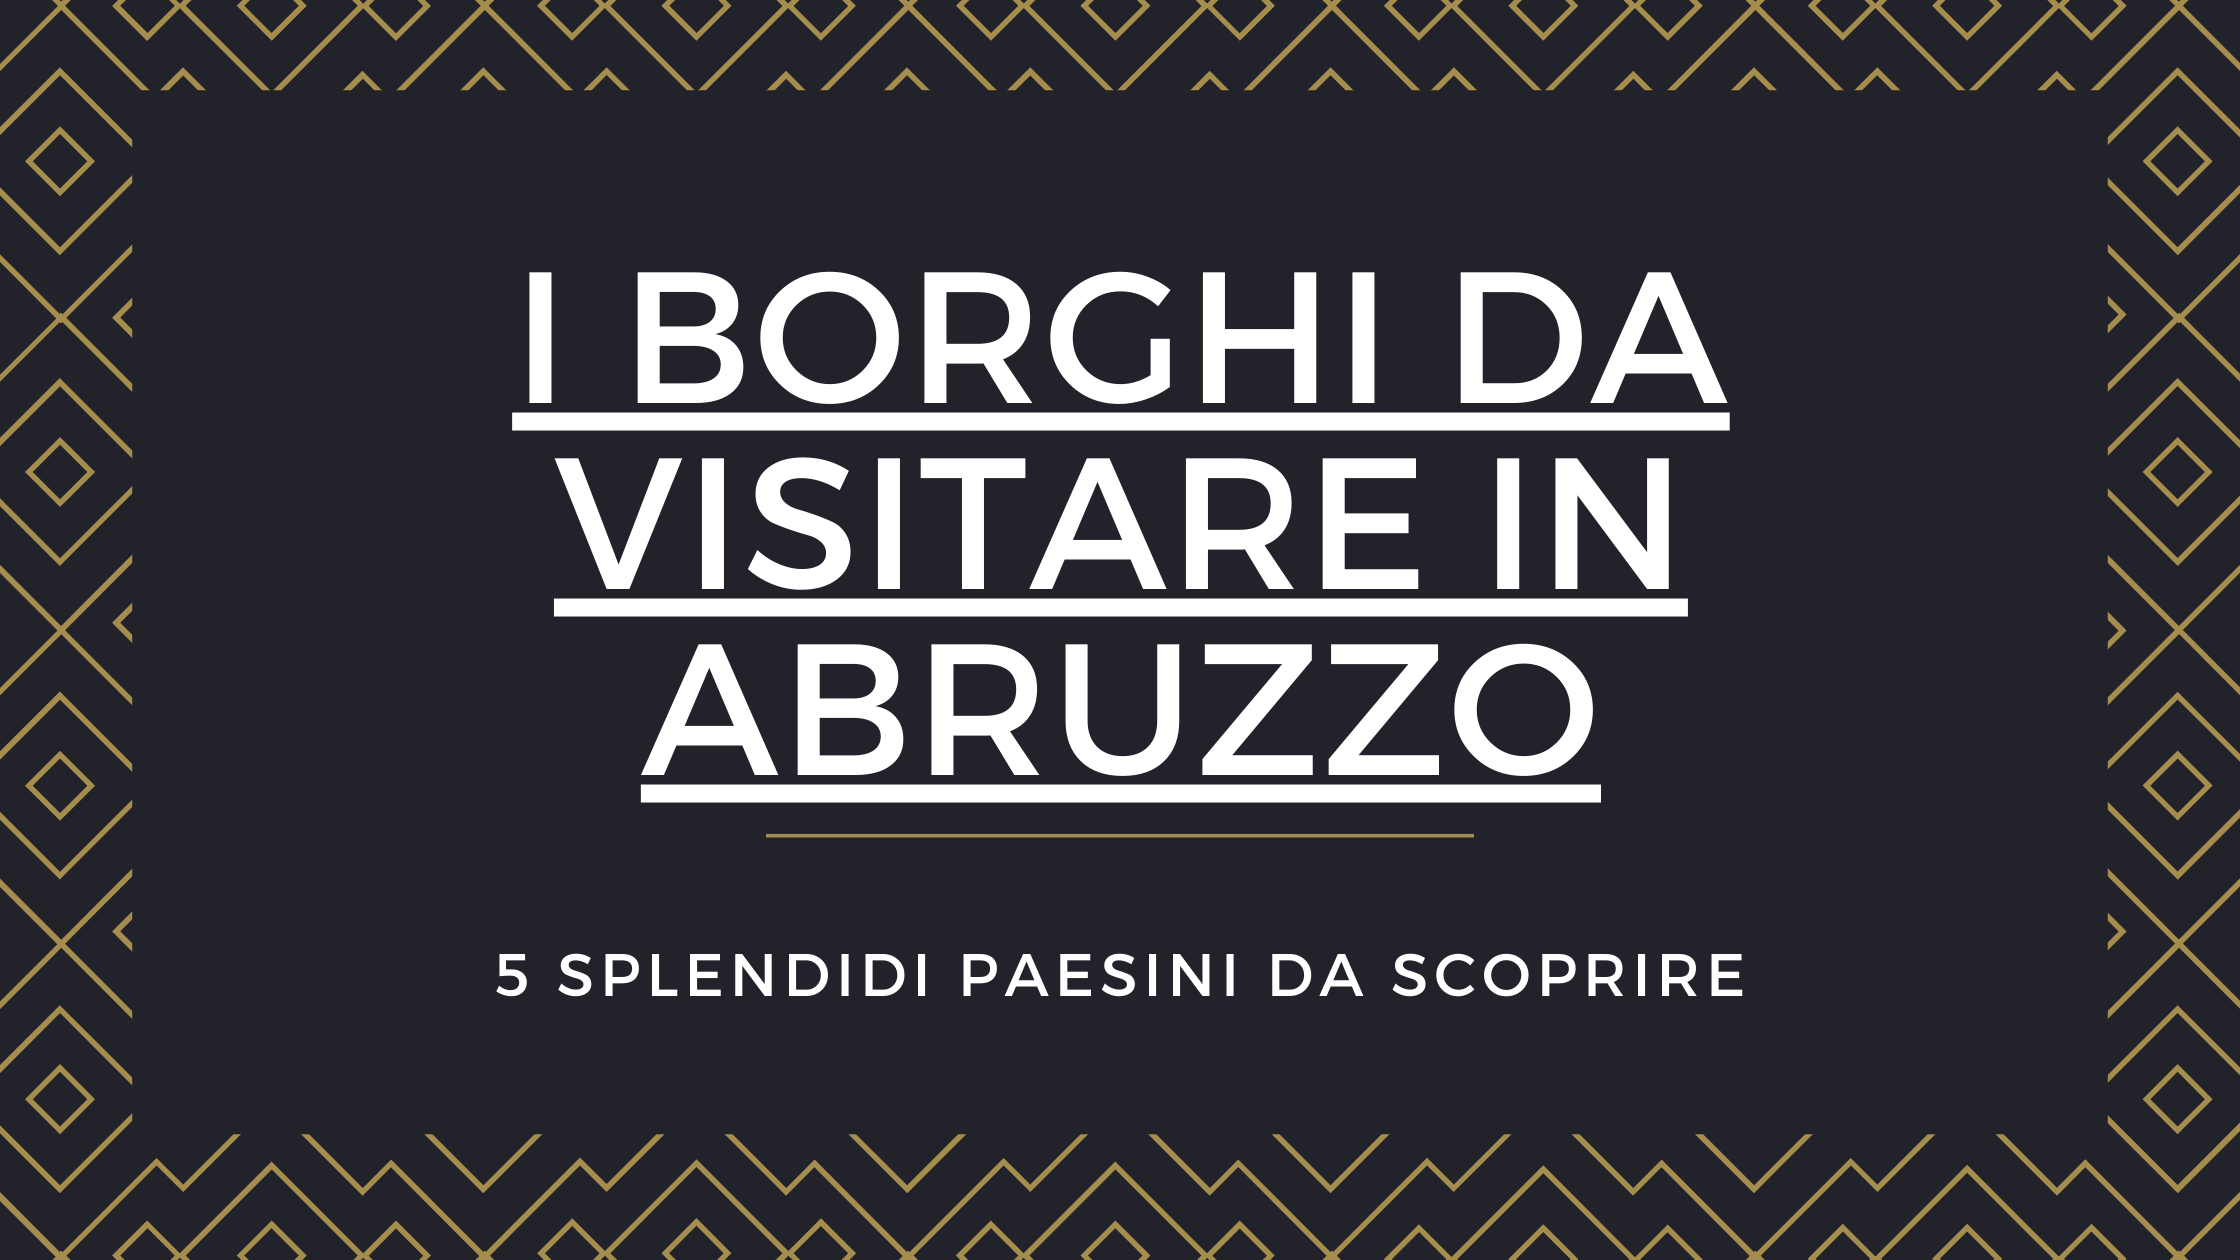 I borghi da visitare in Abruzzo